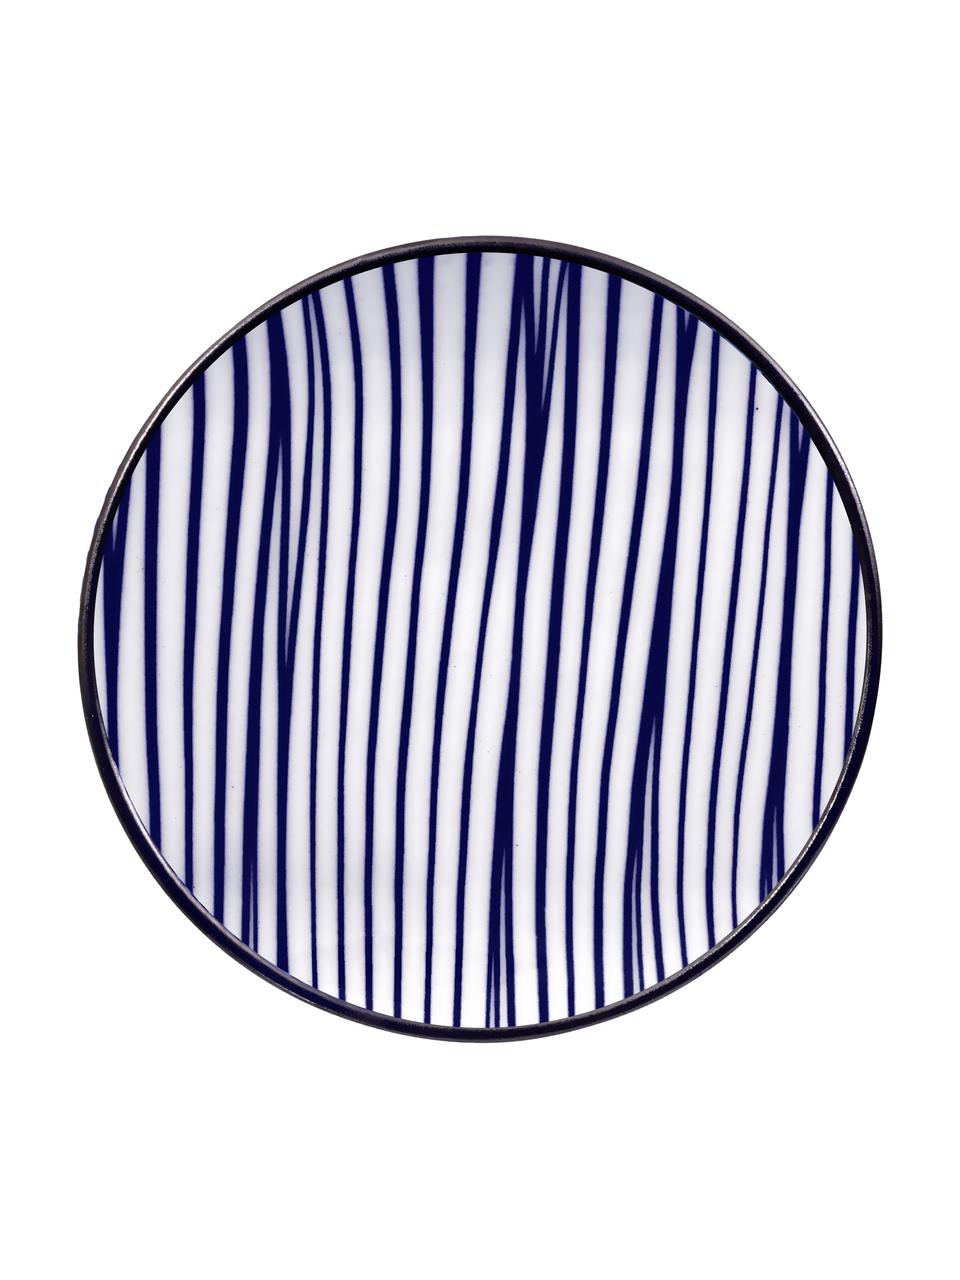 Handgemachtes Porzellan-Geschirr-Set Nippon mit Essstäbchen, 2 Personen (6er-Set), Blau, Weiß, Dunkles Holz, Set mit verschiedenen Größen